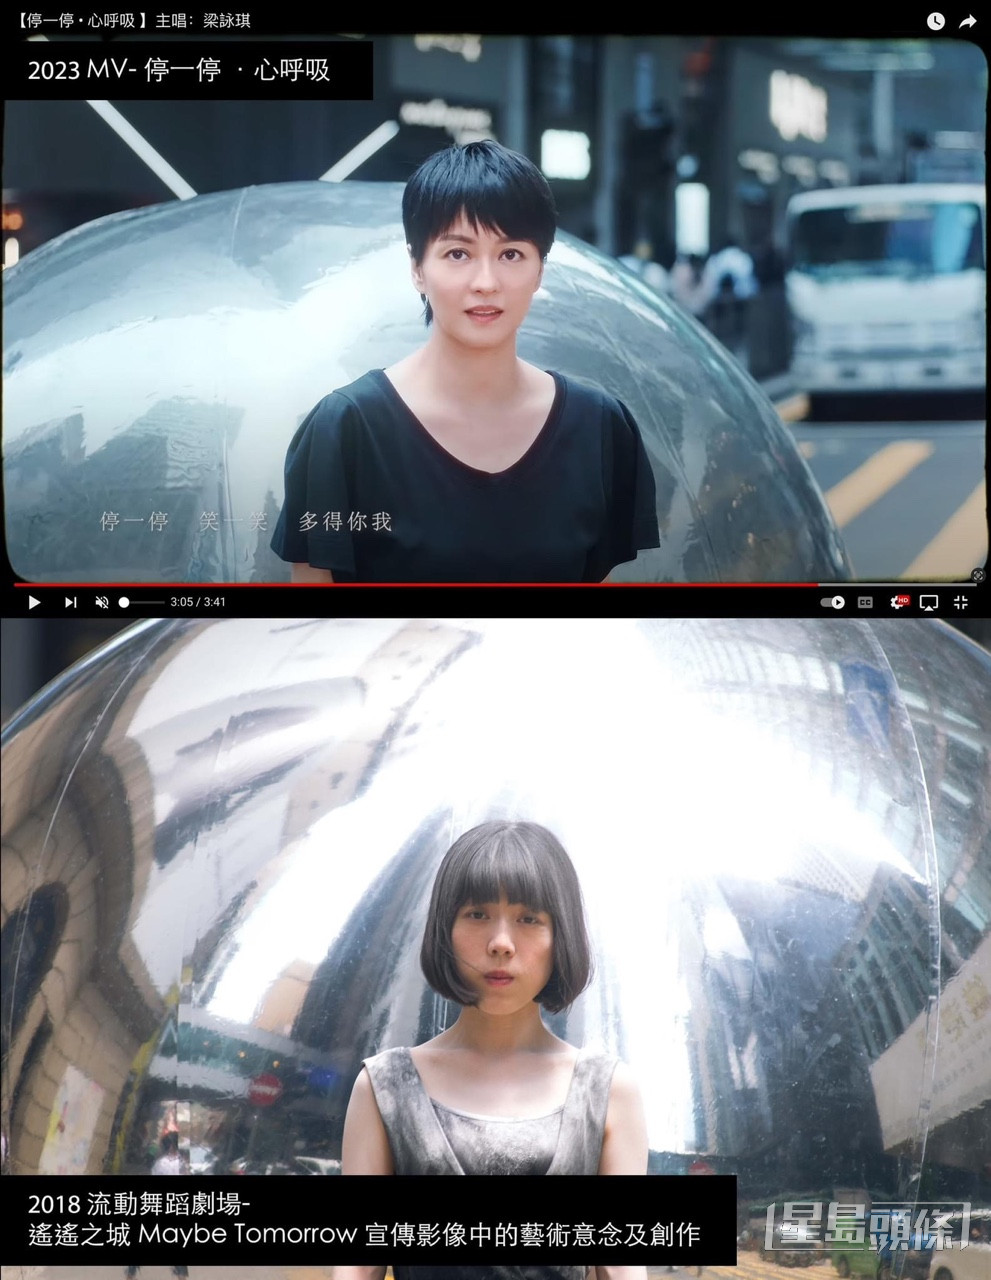 由梁詠琪主唱、袁劍偉執導的歌曲《停一停·心呼吸》MV被指涉嫌抄襲 2018年流動舞蹈劇場作品《遙遙之城 Maybe Tomorrow 》。